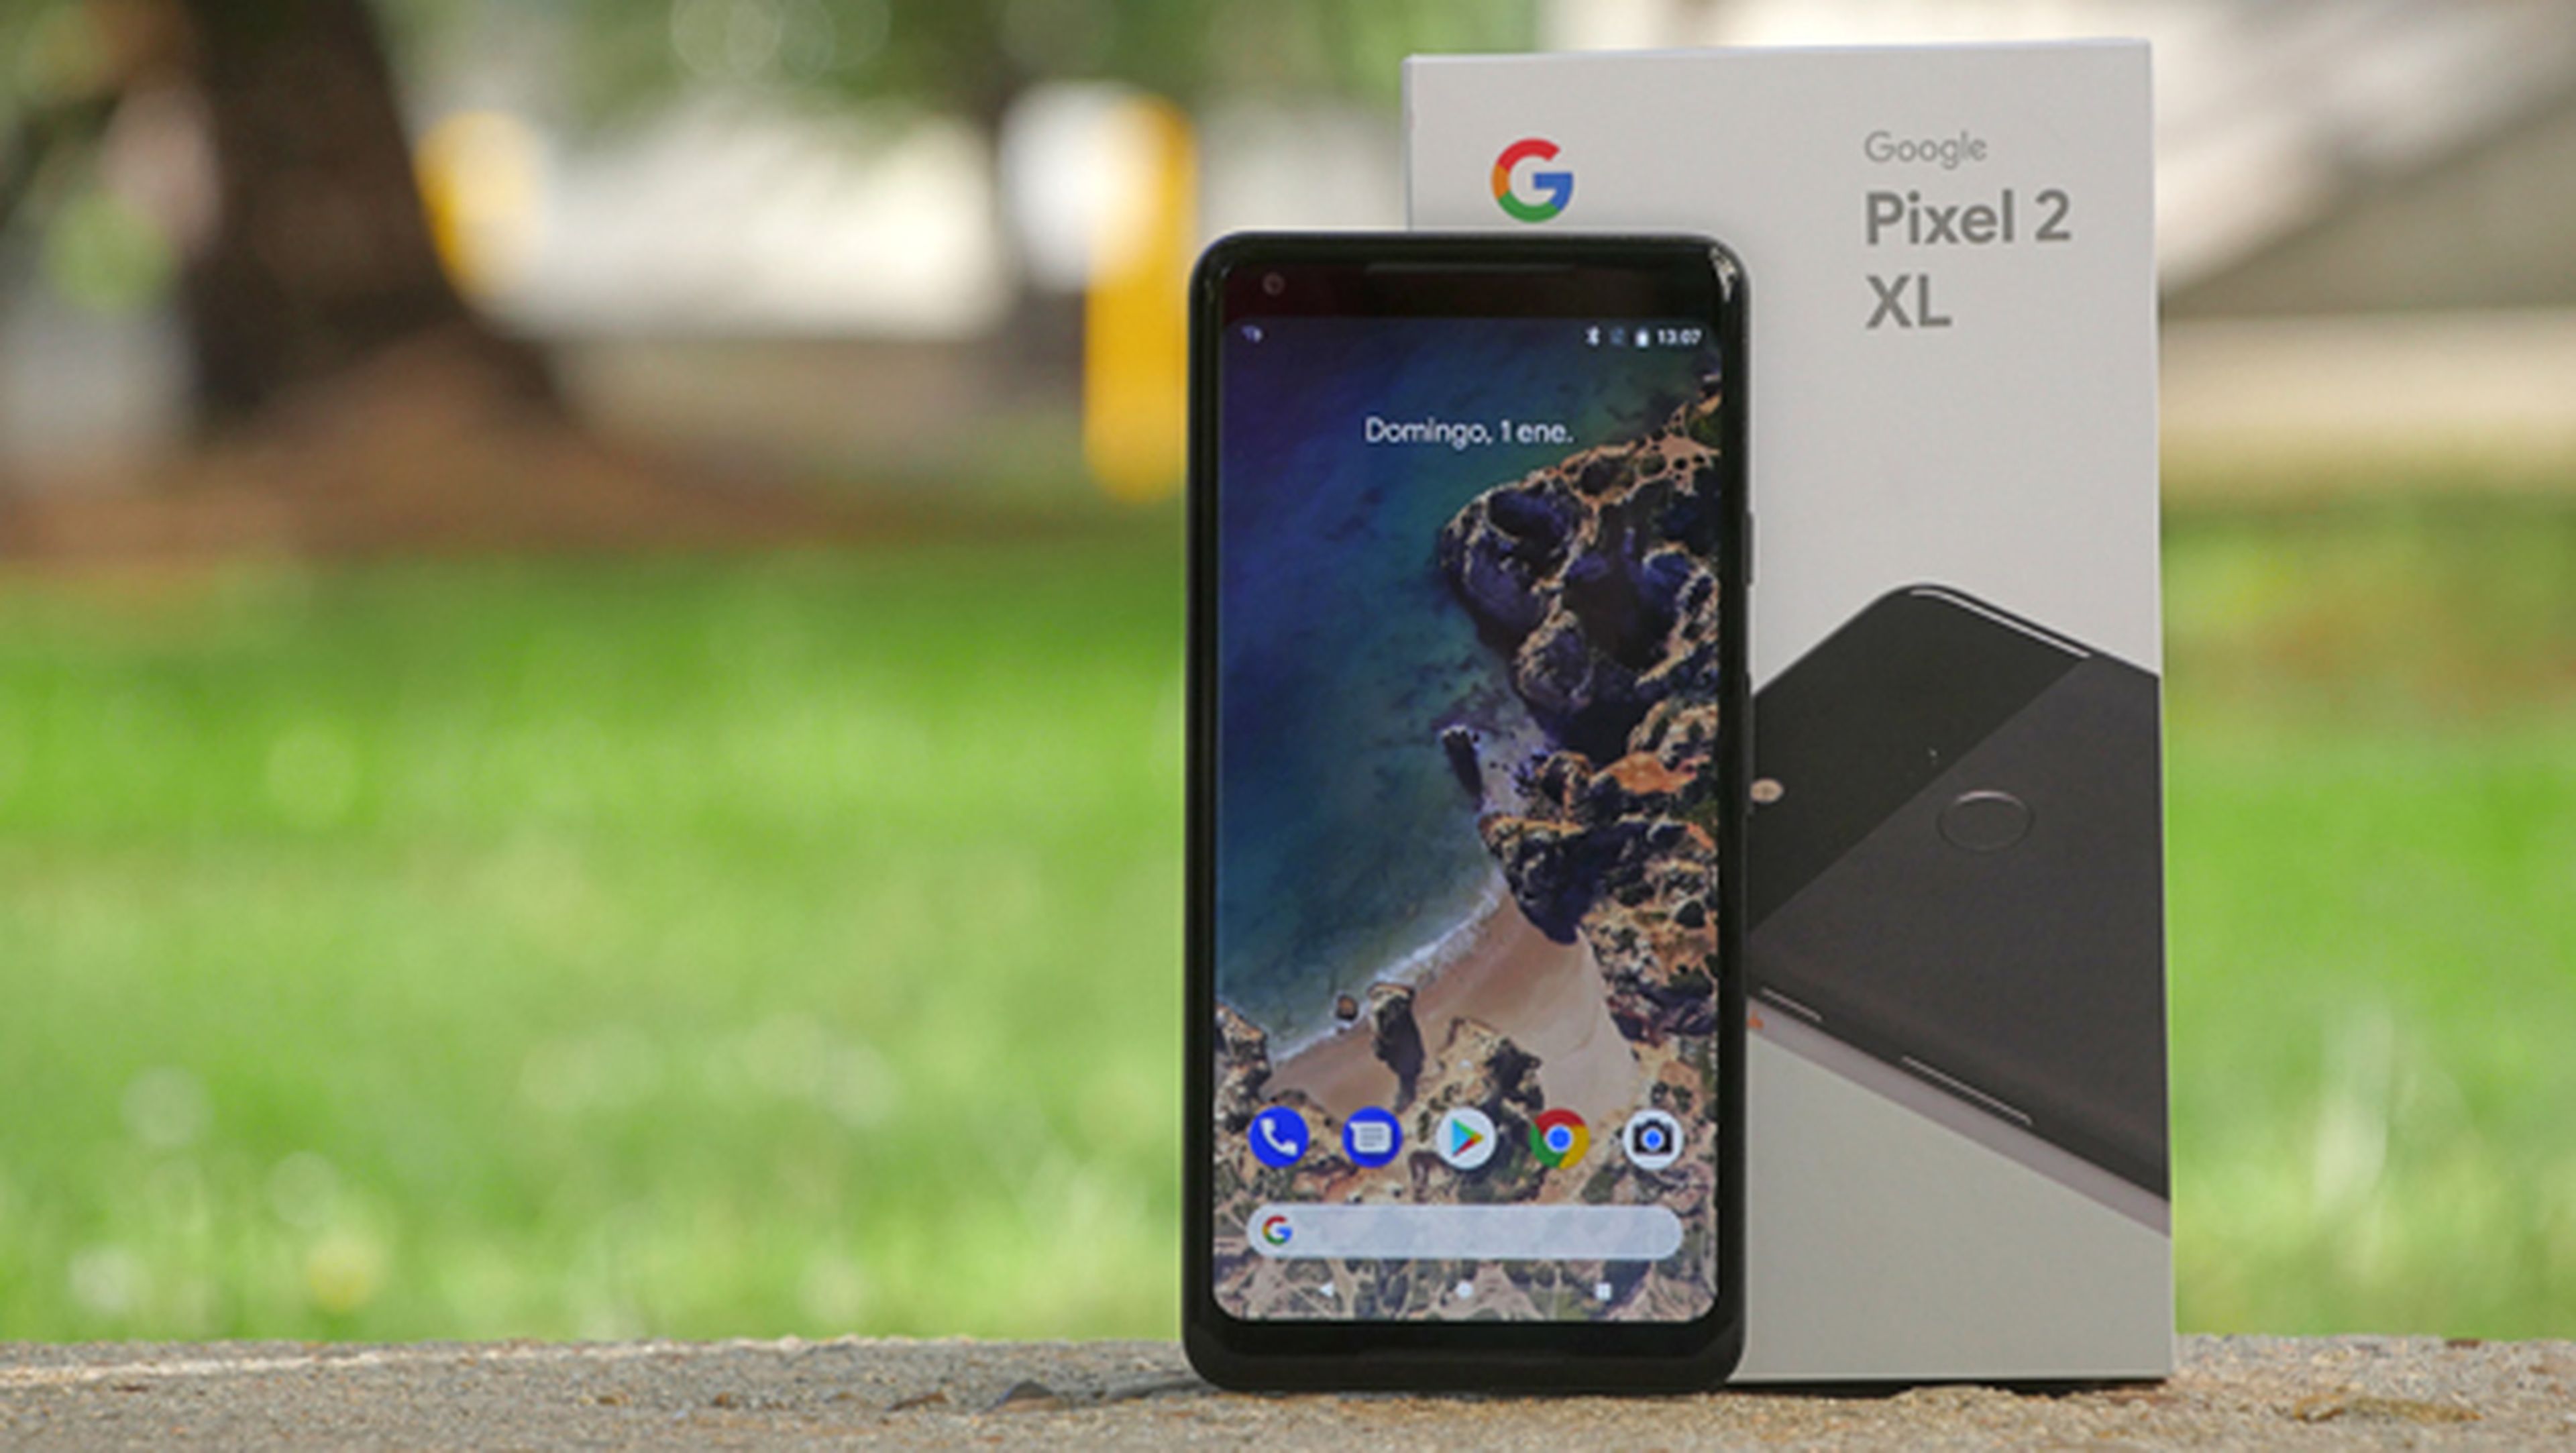 Unboxing en vídeo del Google Pixel 2 XL